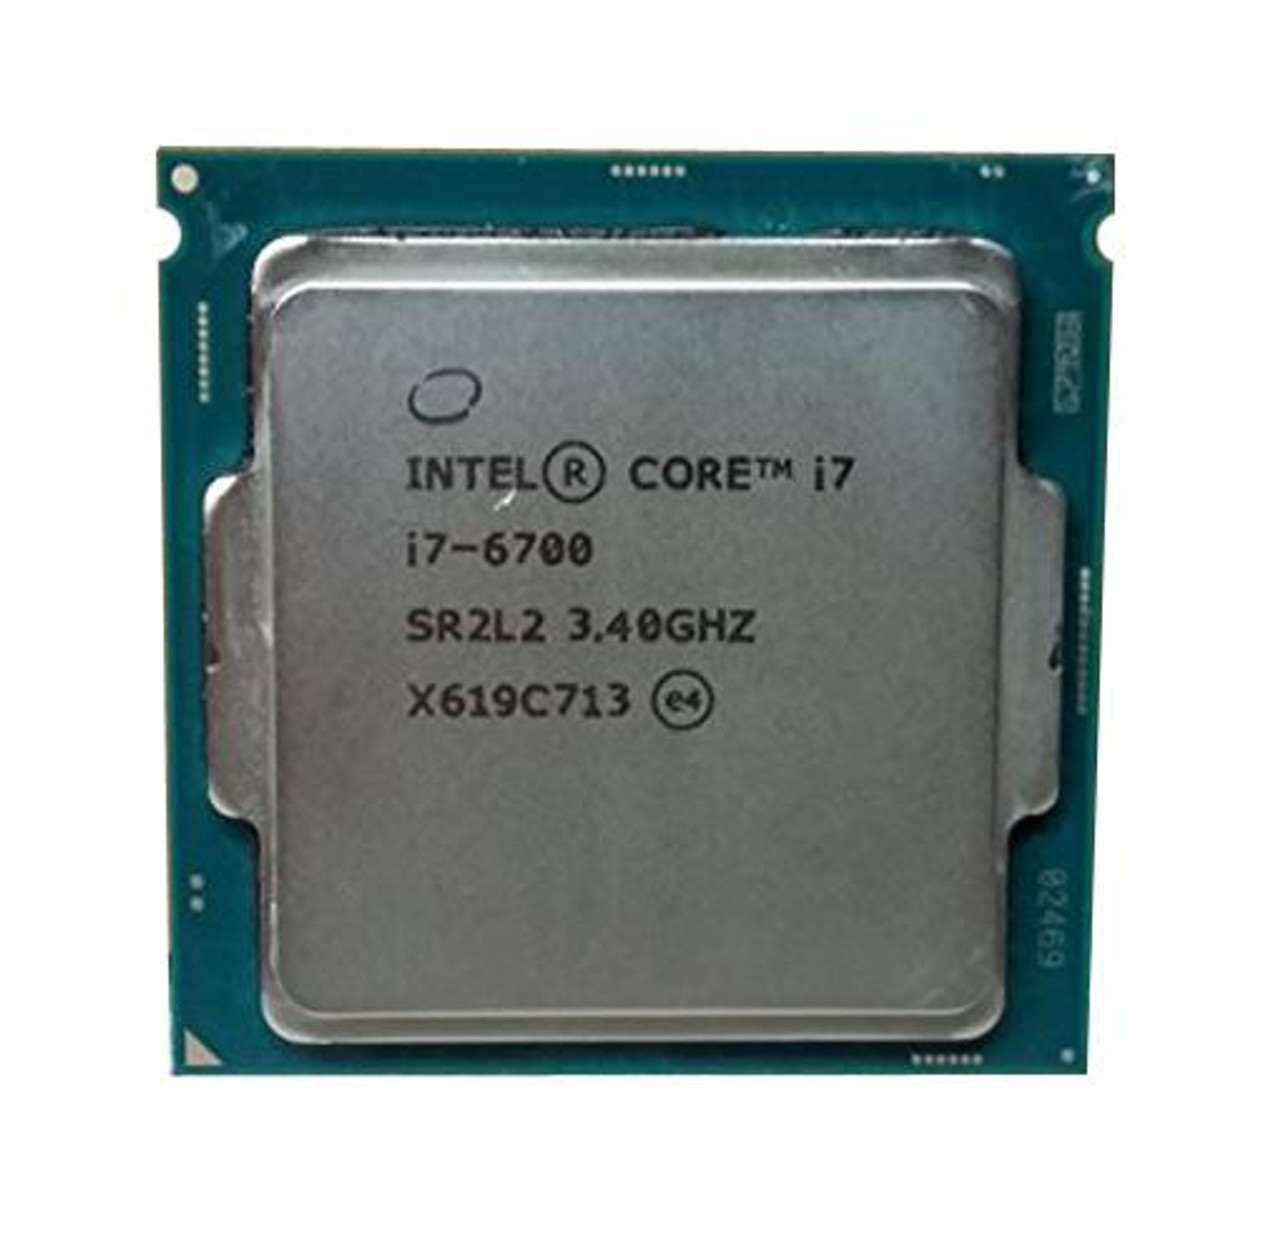 新しいコレクション CORE CPU Intel i7 3.40GHz 6700 PCパーツ